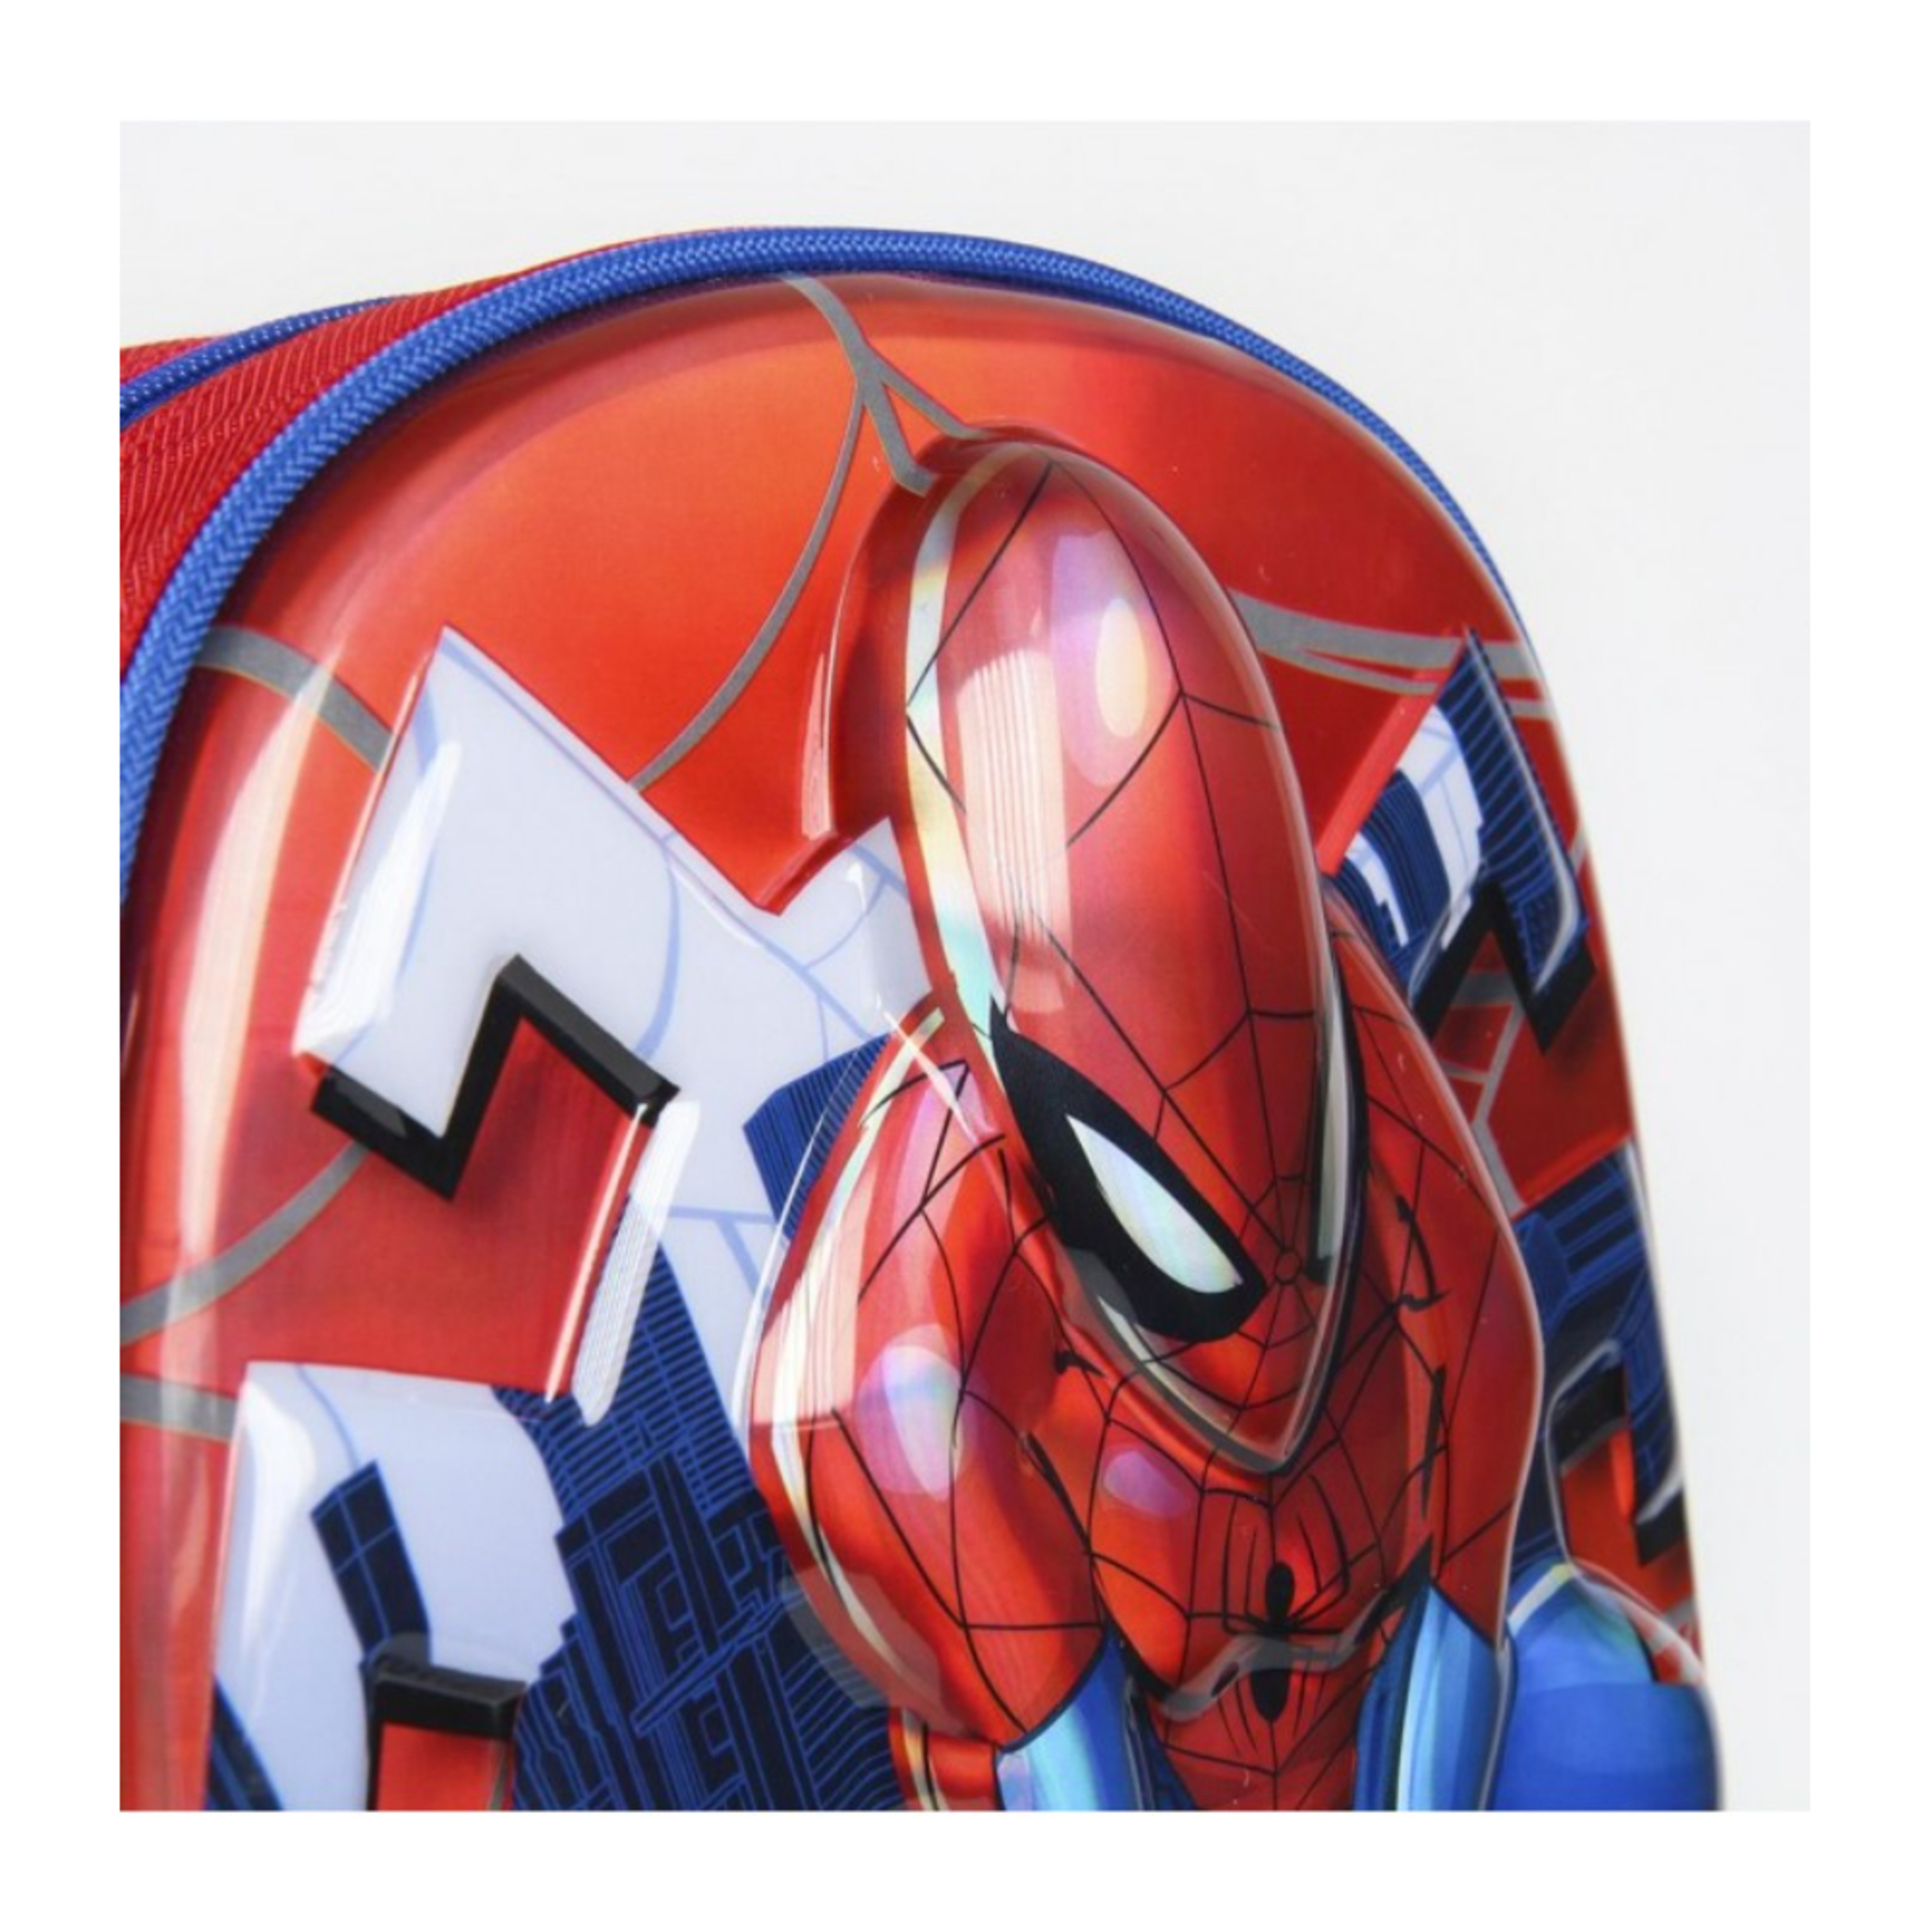 Mochila Spiderman Con Forma 3d